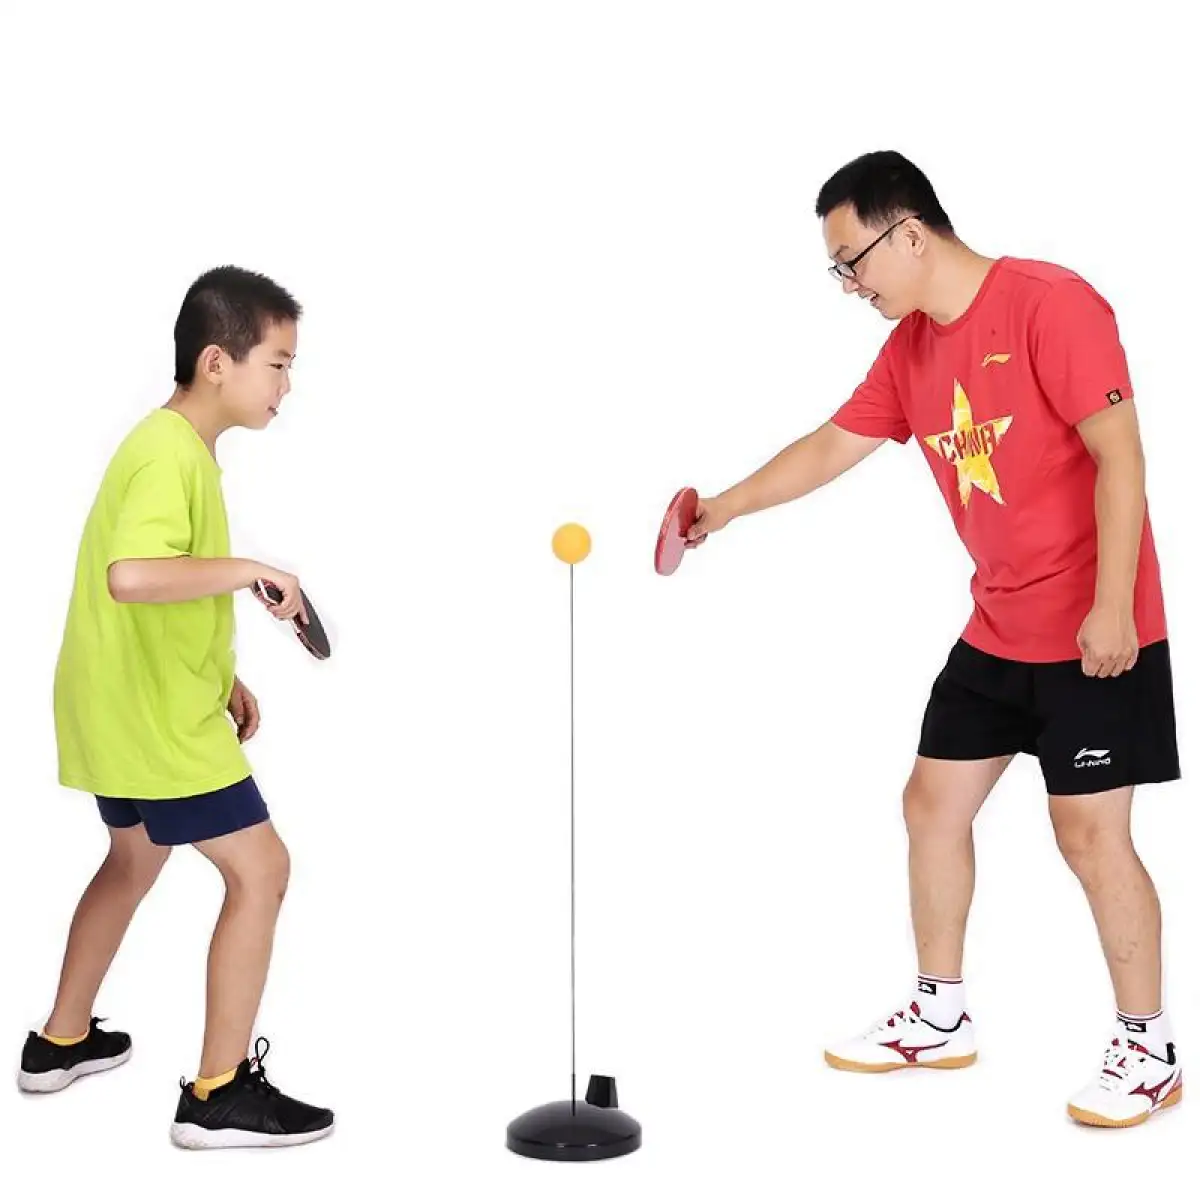 TRÒ CHƠI Bóng bàn luyện phản xạ cho bé - Bộ đồ chơi bóng phản xạ - Dụng